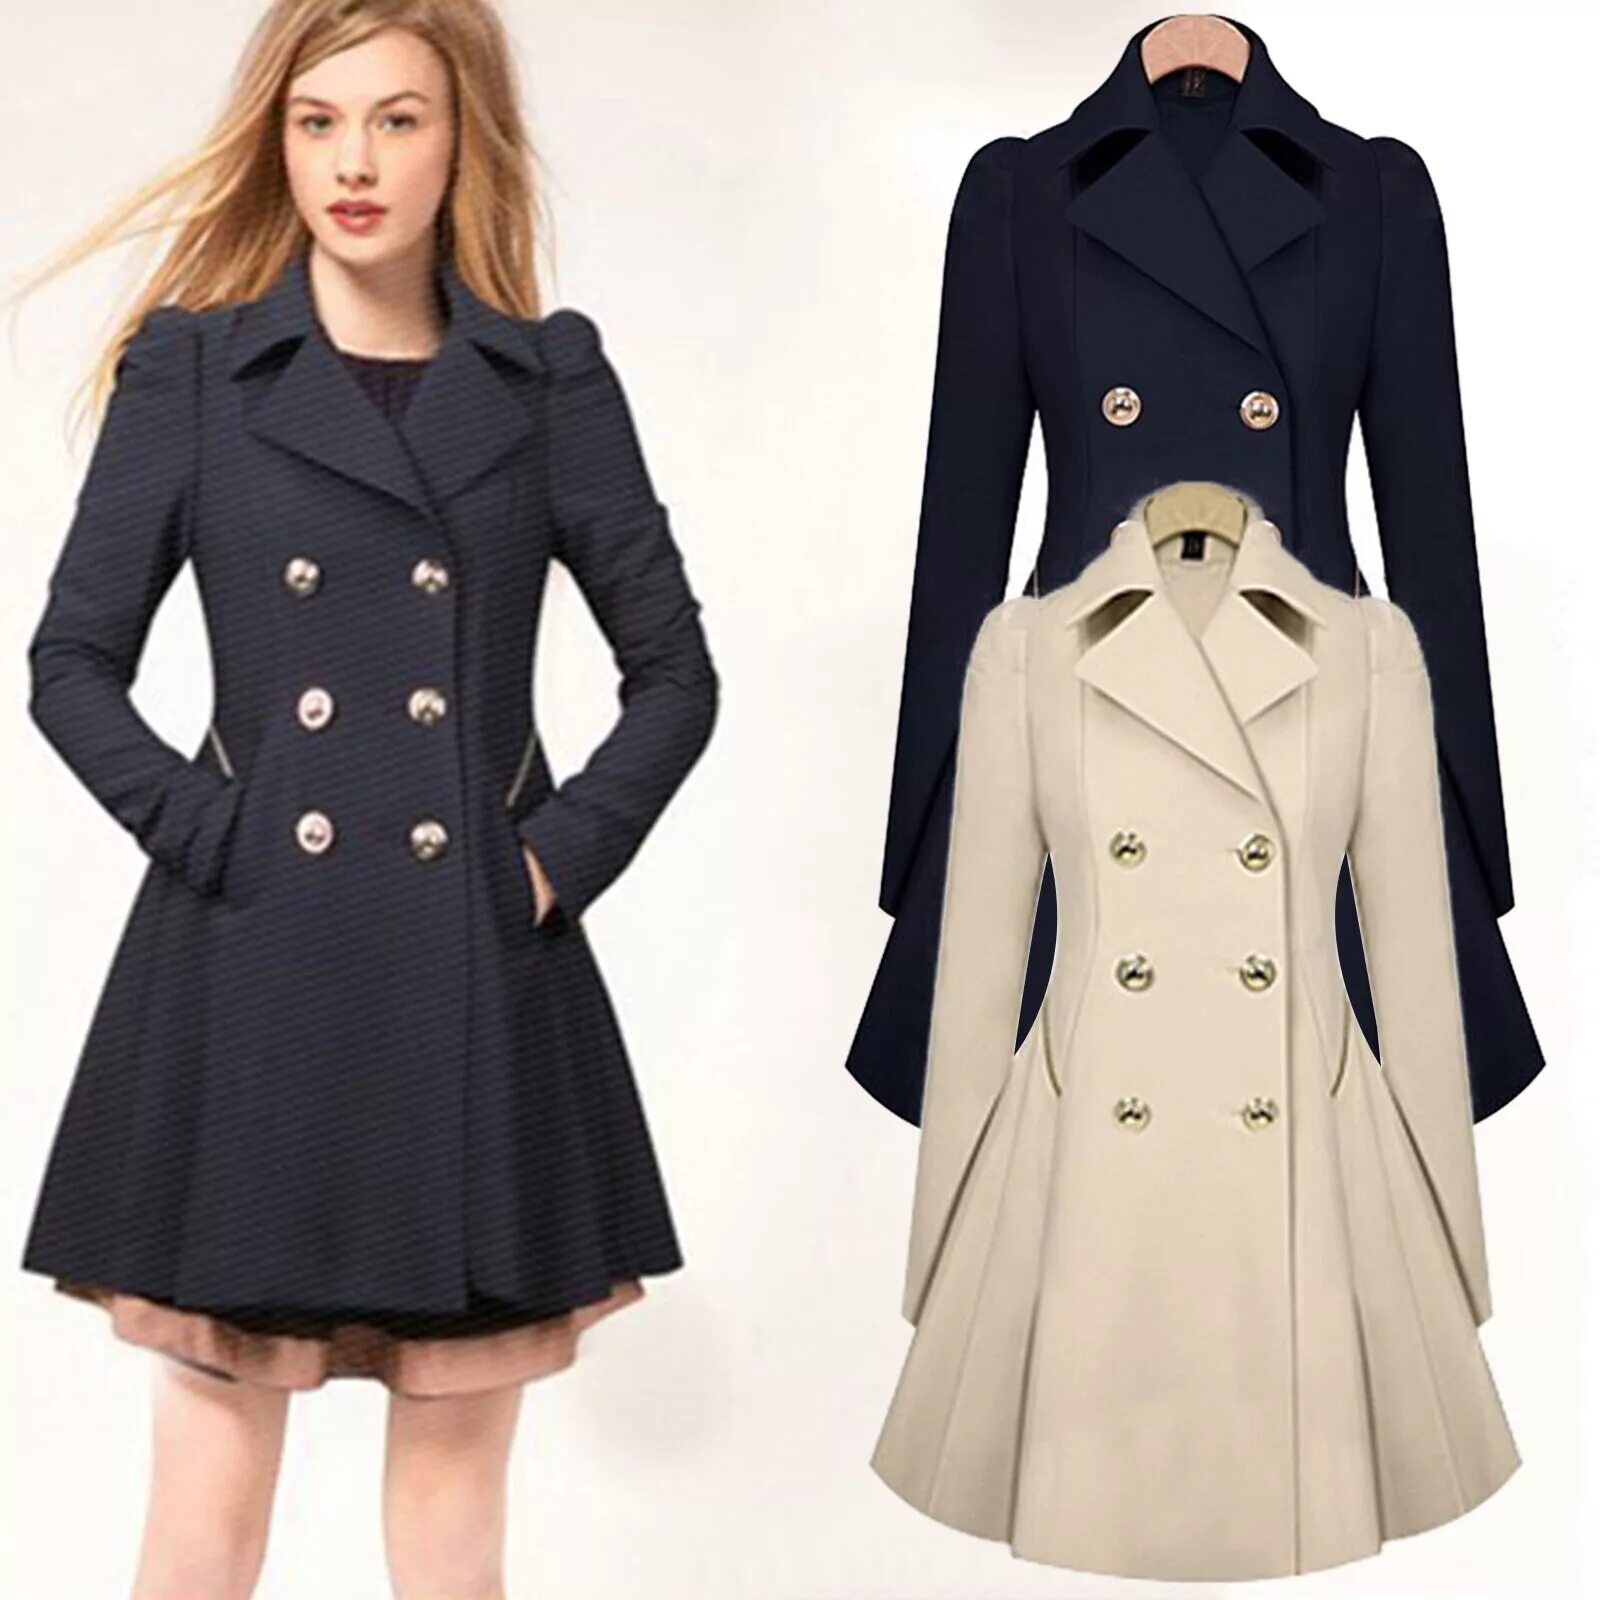 Купить одежду пальто. TRF Outerwear пальто. Женское пальто. Платье пальто. Двубортное расклешенное пальто женское.